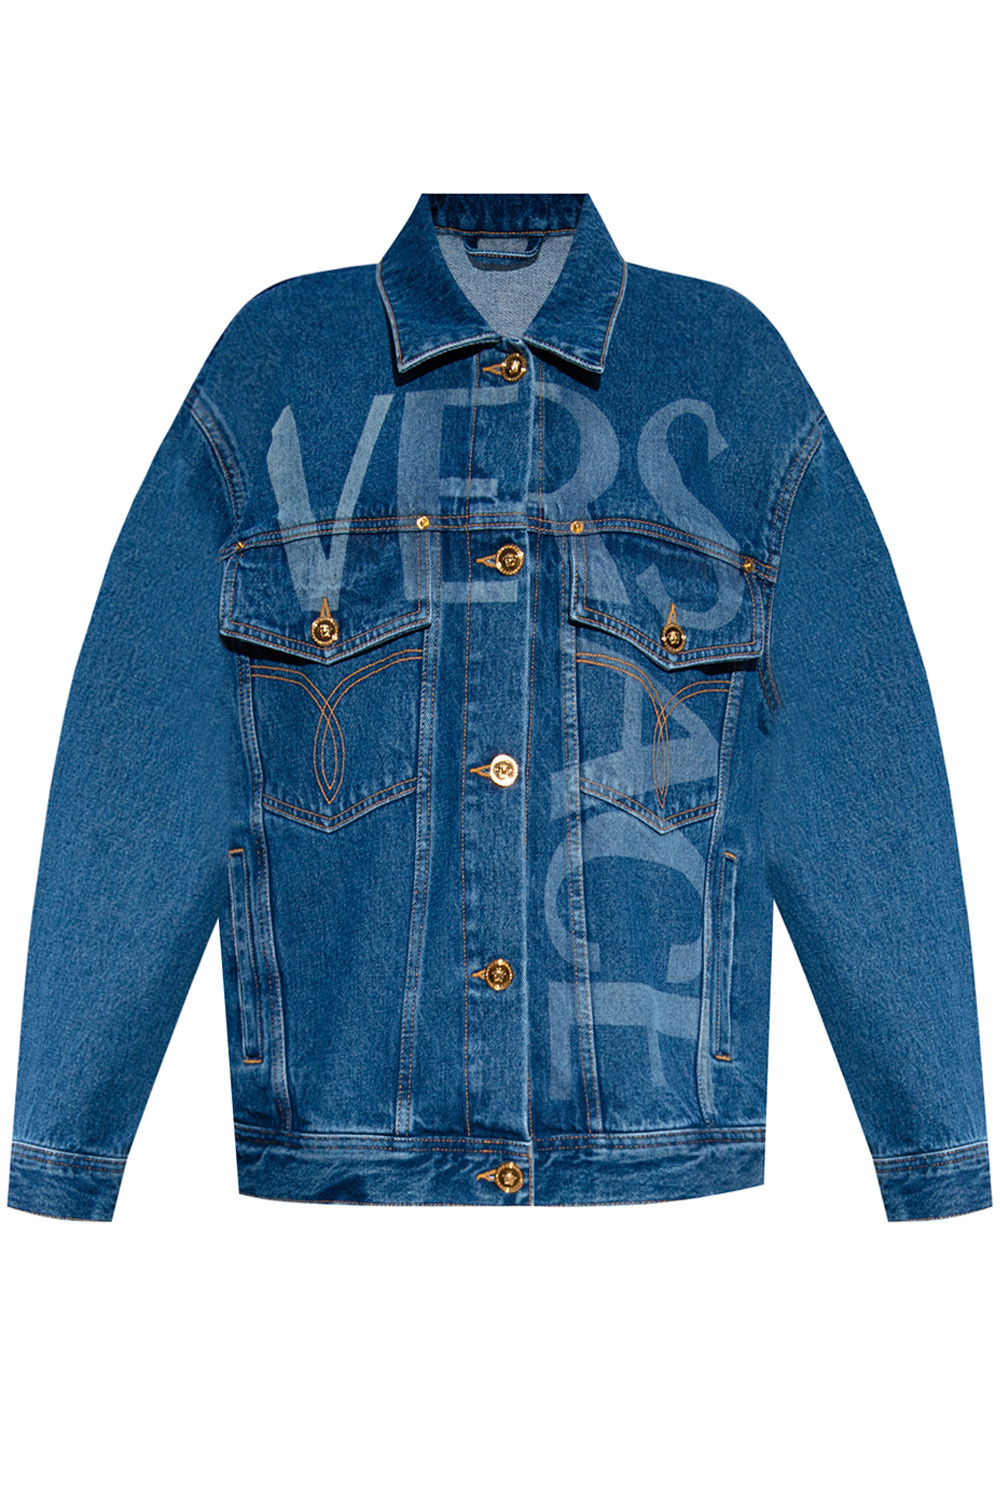 Denim jacket Versace - Vintage Military Hooded Jacket - IetpShops